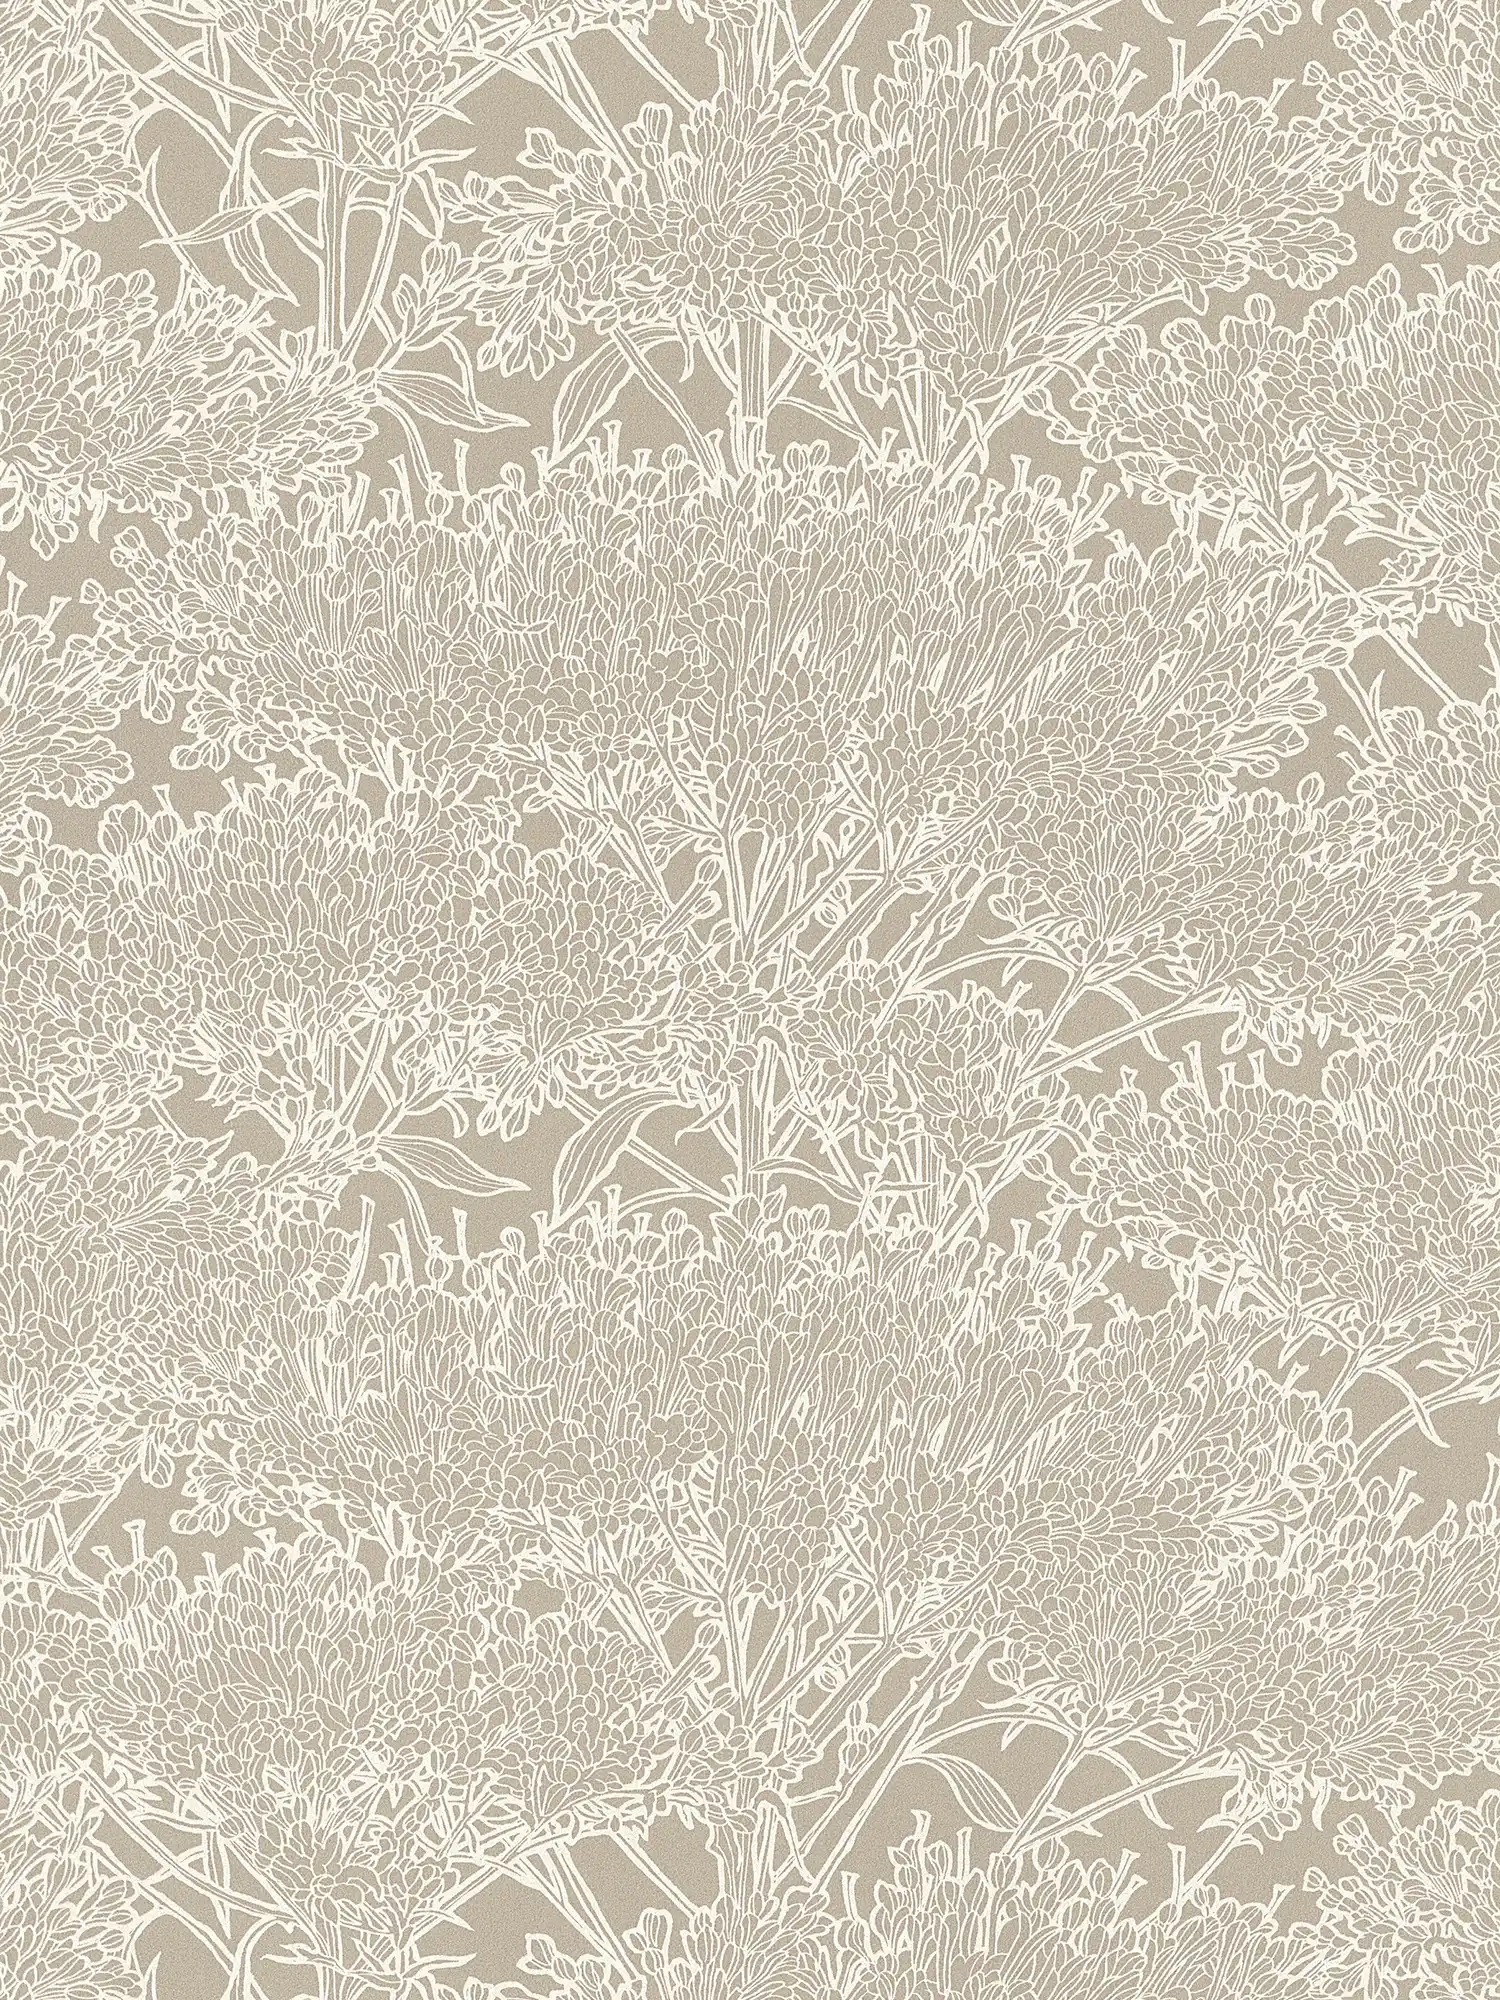 Mediterrane Tapete Sandfarben mit floralem Muster – Grau, Silber, Beige
